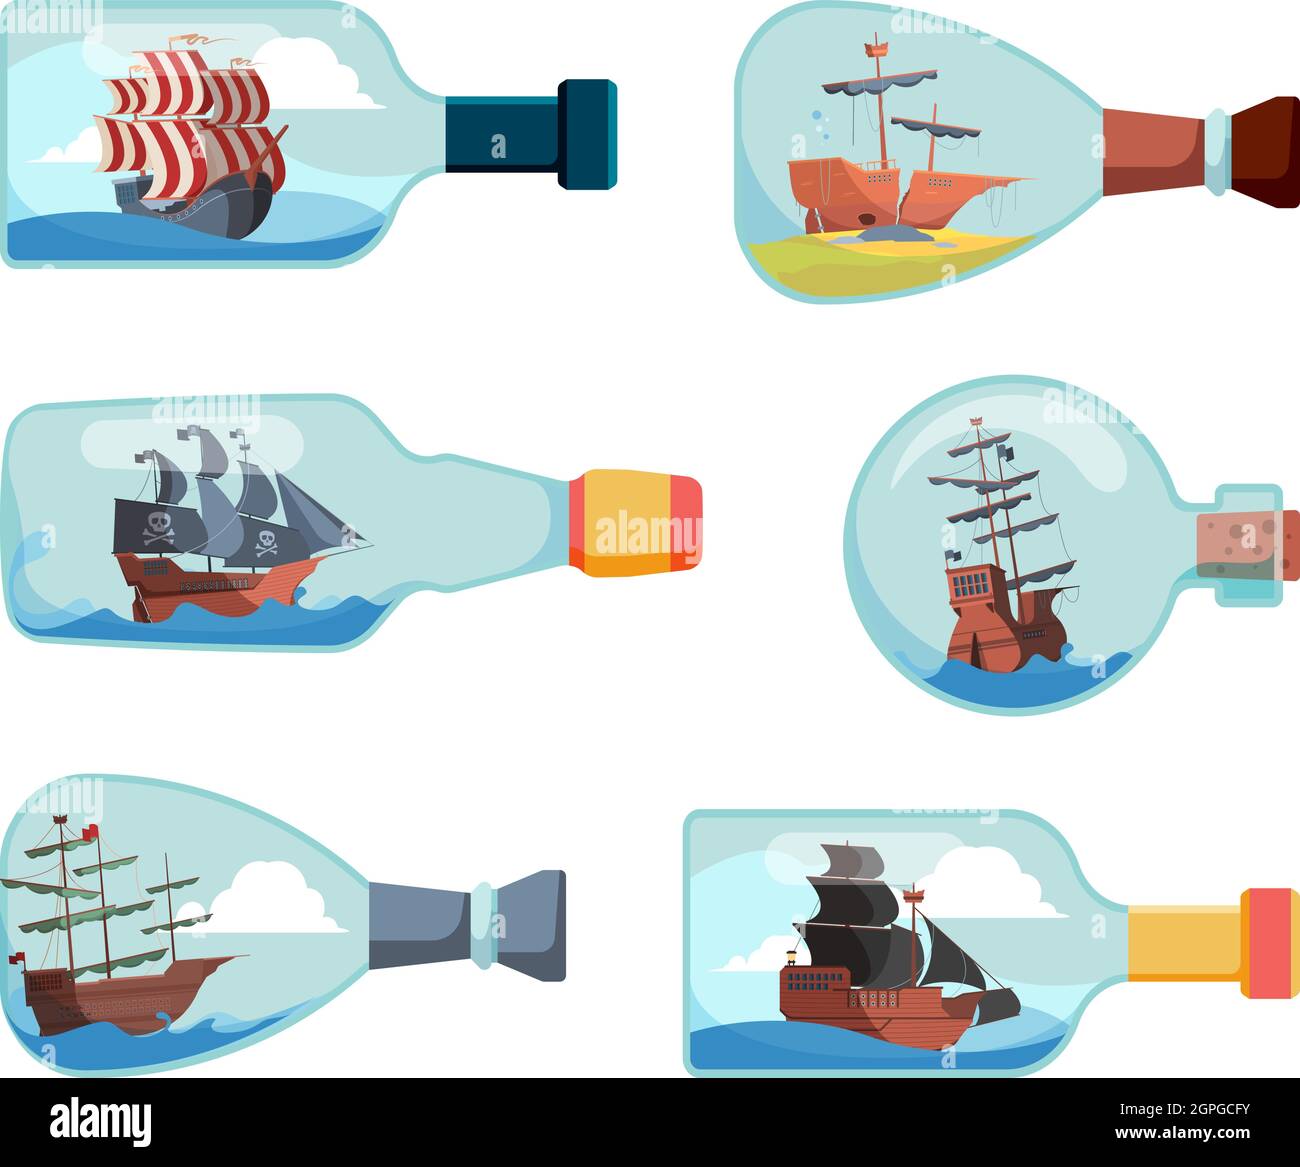 Lieferung in Flaschen. Dekorative Marine-Souvenir-Flaschen Boot-Vektor-Illustrationen Stock Vektor